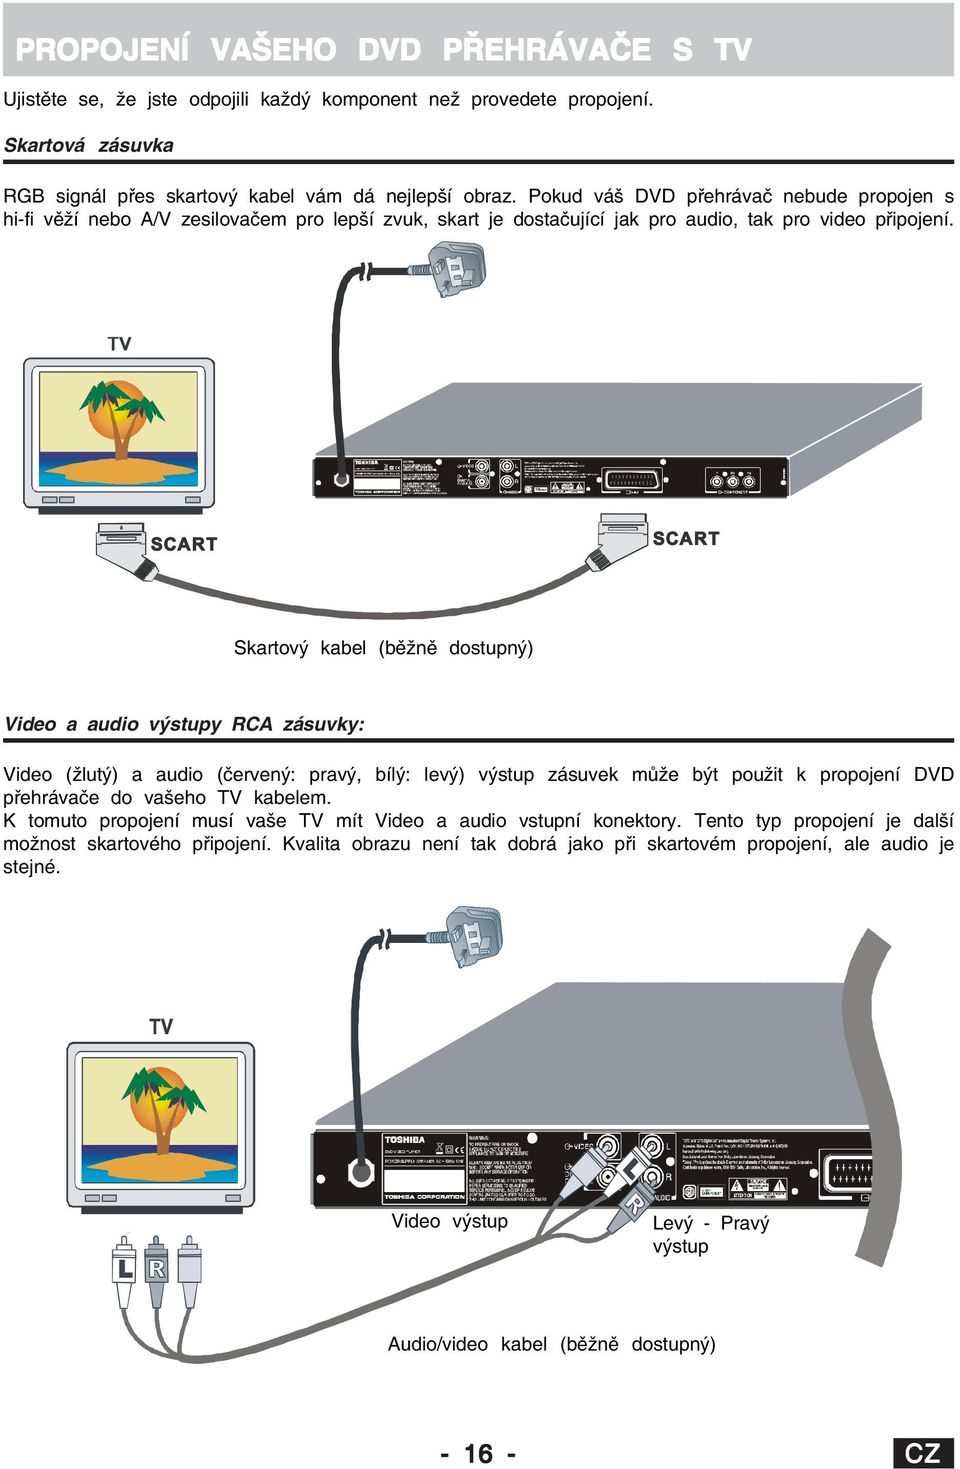 3 50 16 28 6 SCART SCART Skartový kabel (běžně dostupný) Video a audio výstupy RCA zásuvky: Video (žlutý) a audio (červený: pravý, bílý: levý) výstup zásuvek může být použit k propojení DVD